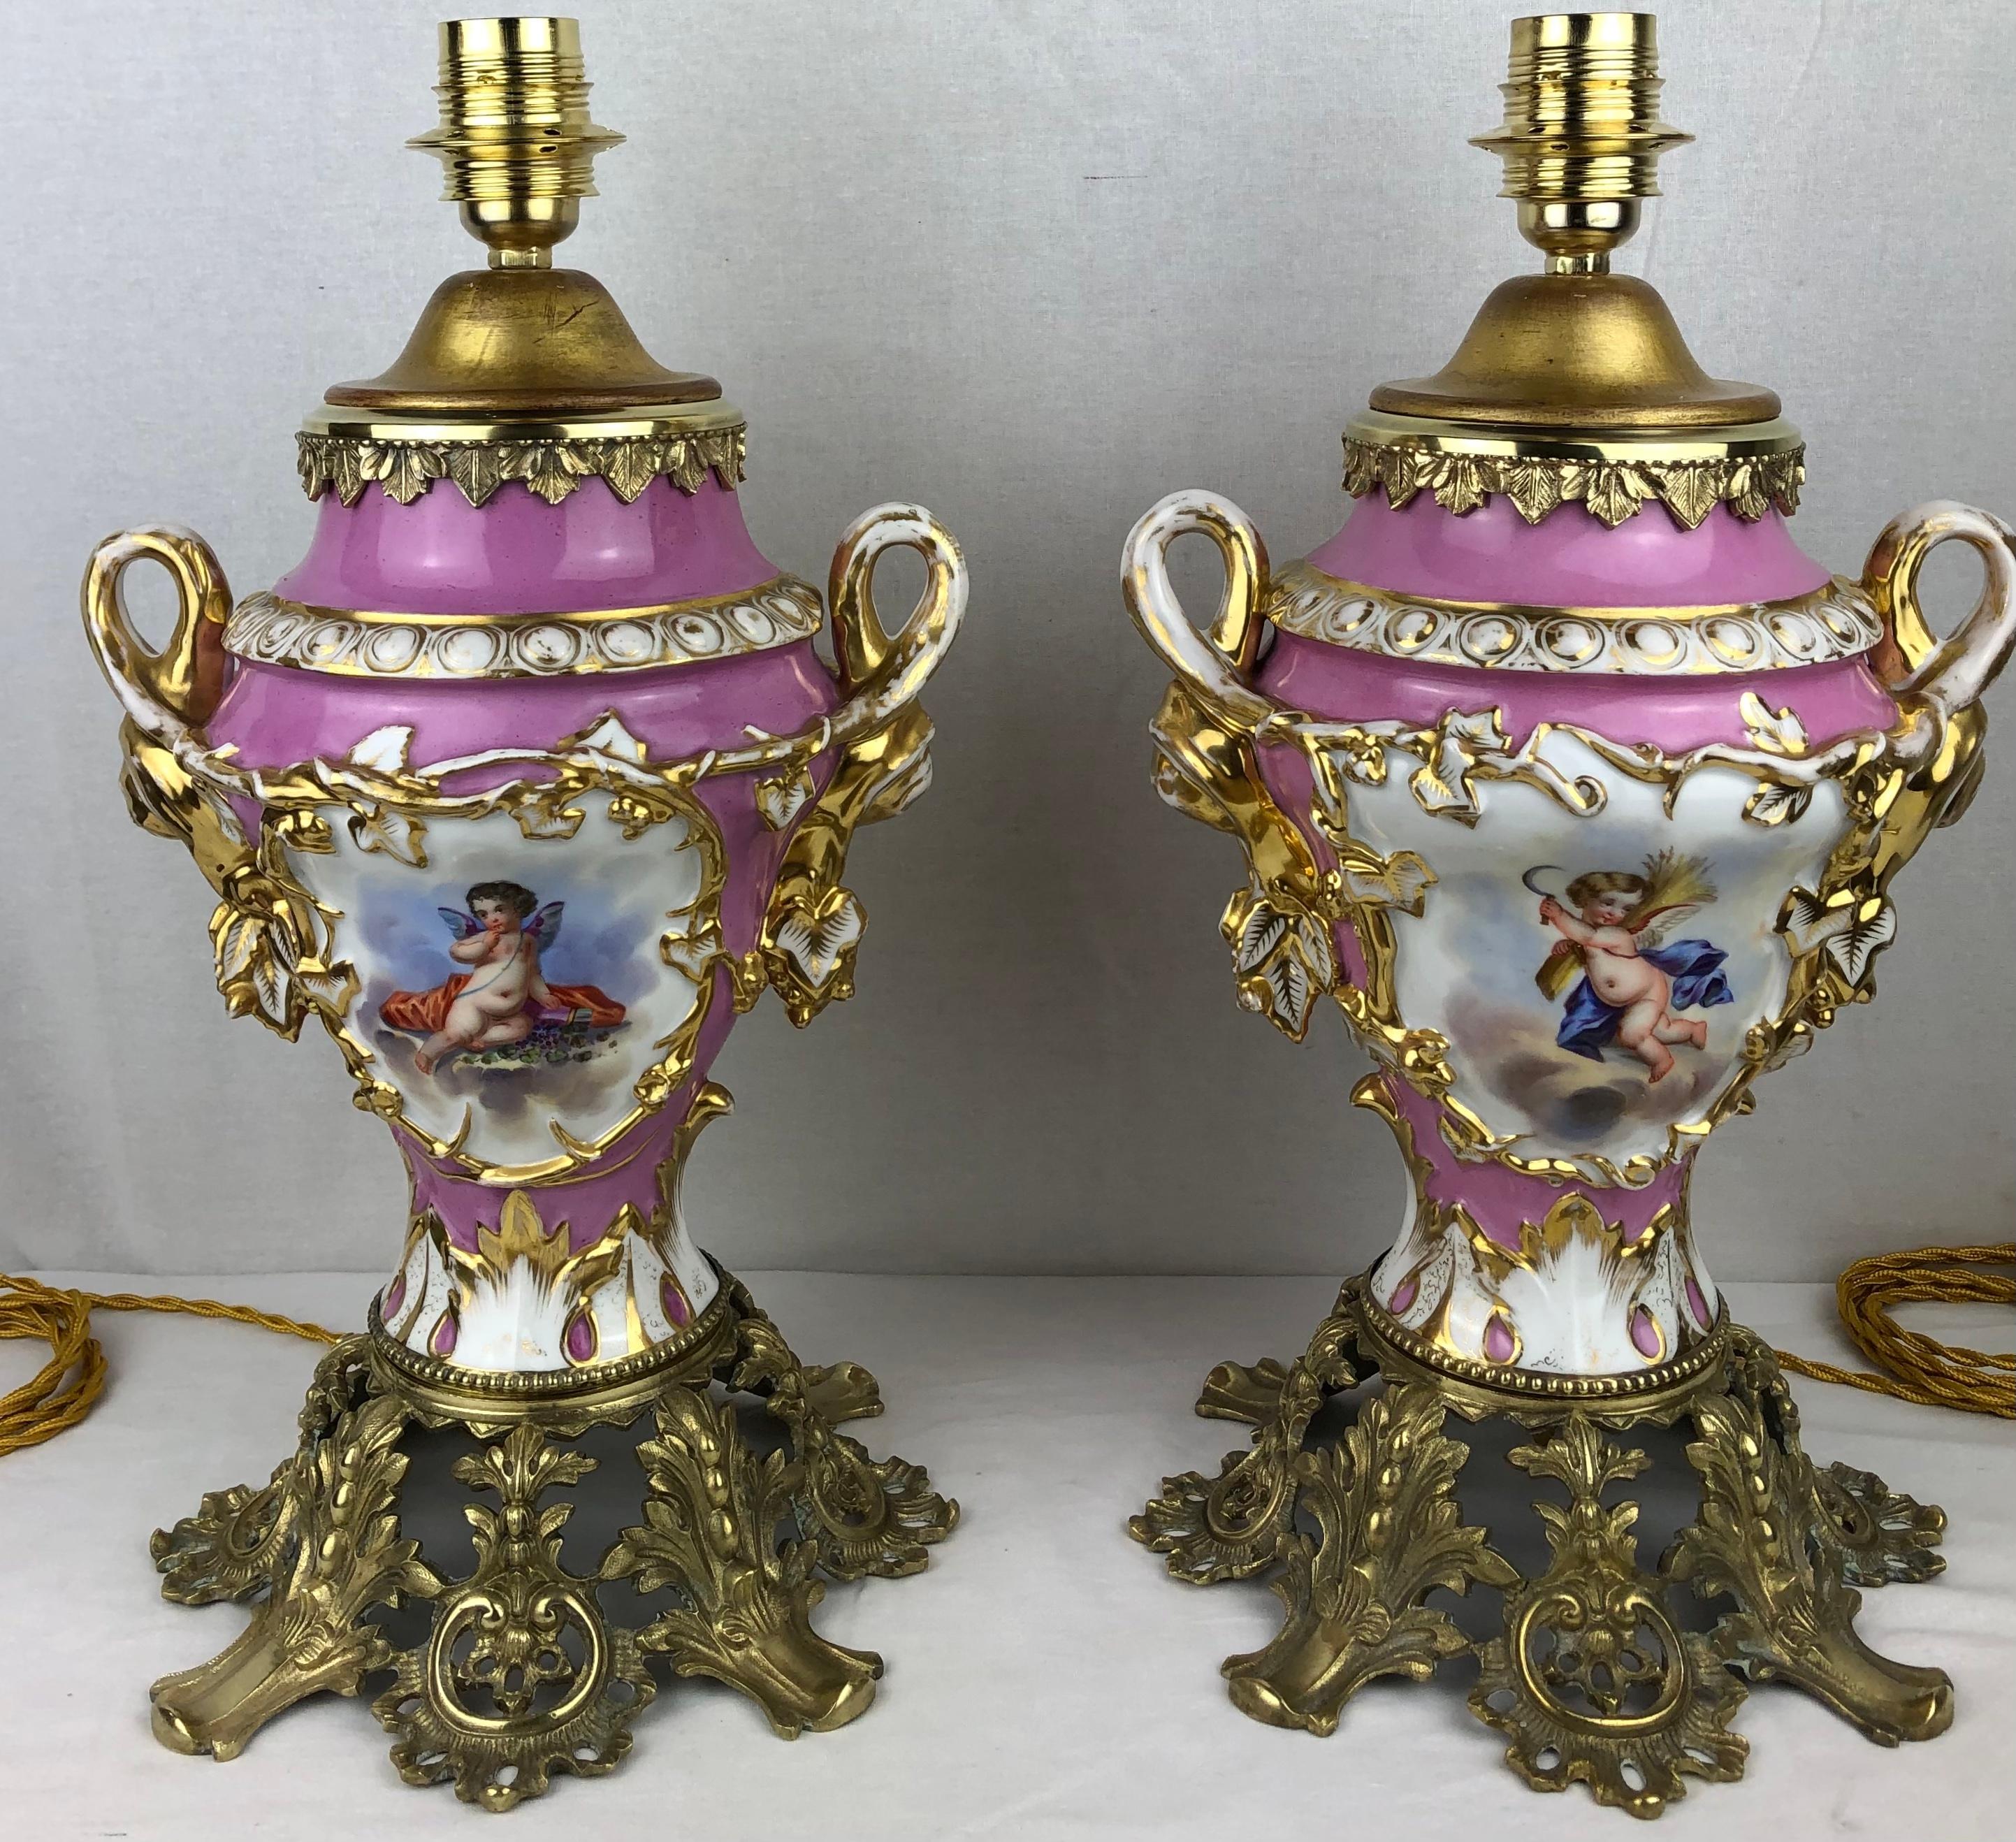 Zwei hochwertige Tischlampen aus Sèvres-Porzellan im Louis-XVI-Stil des 19. Jahrhunderts mit Ormolu-Montage. Traditionelles französisches Porzellan. 

Diese wunderschönen, handgefertigten und handbemalten Tischlampen aus Porcelain de Sèvres sind